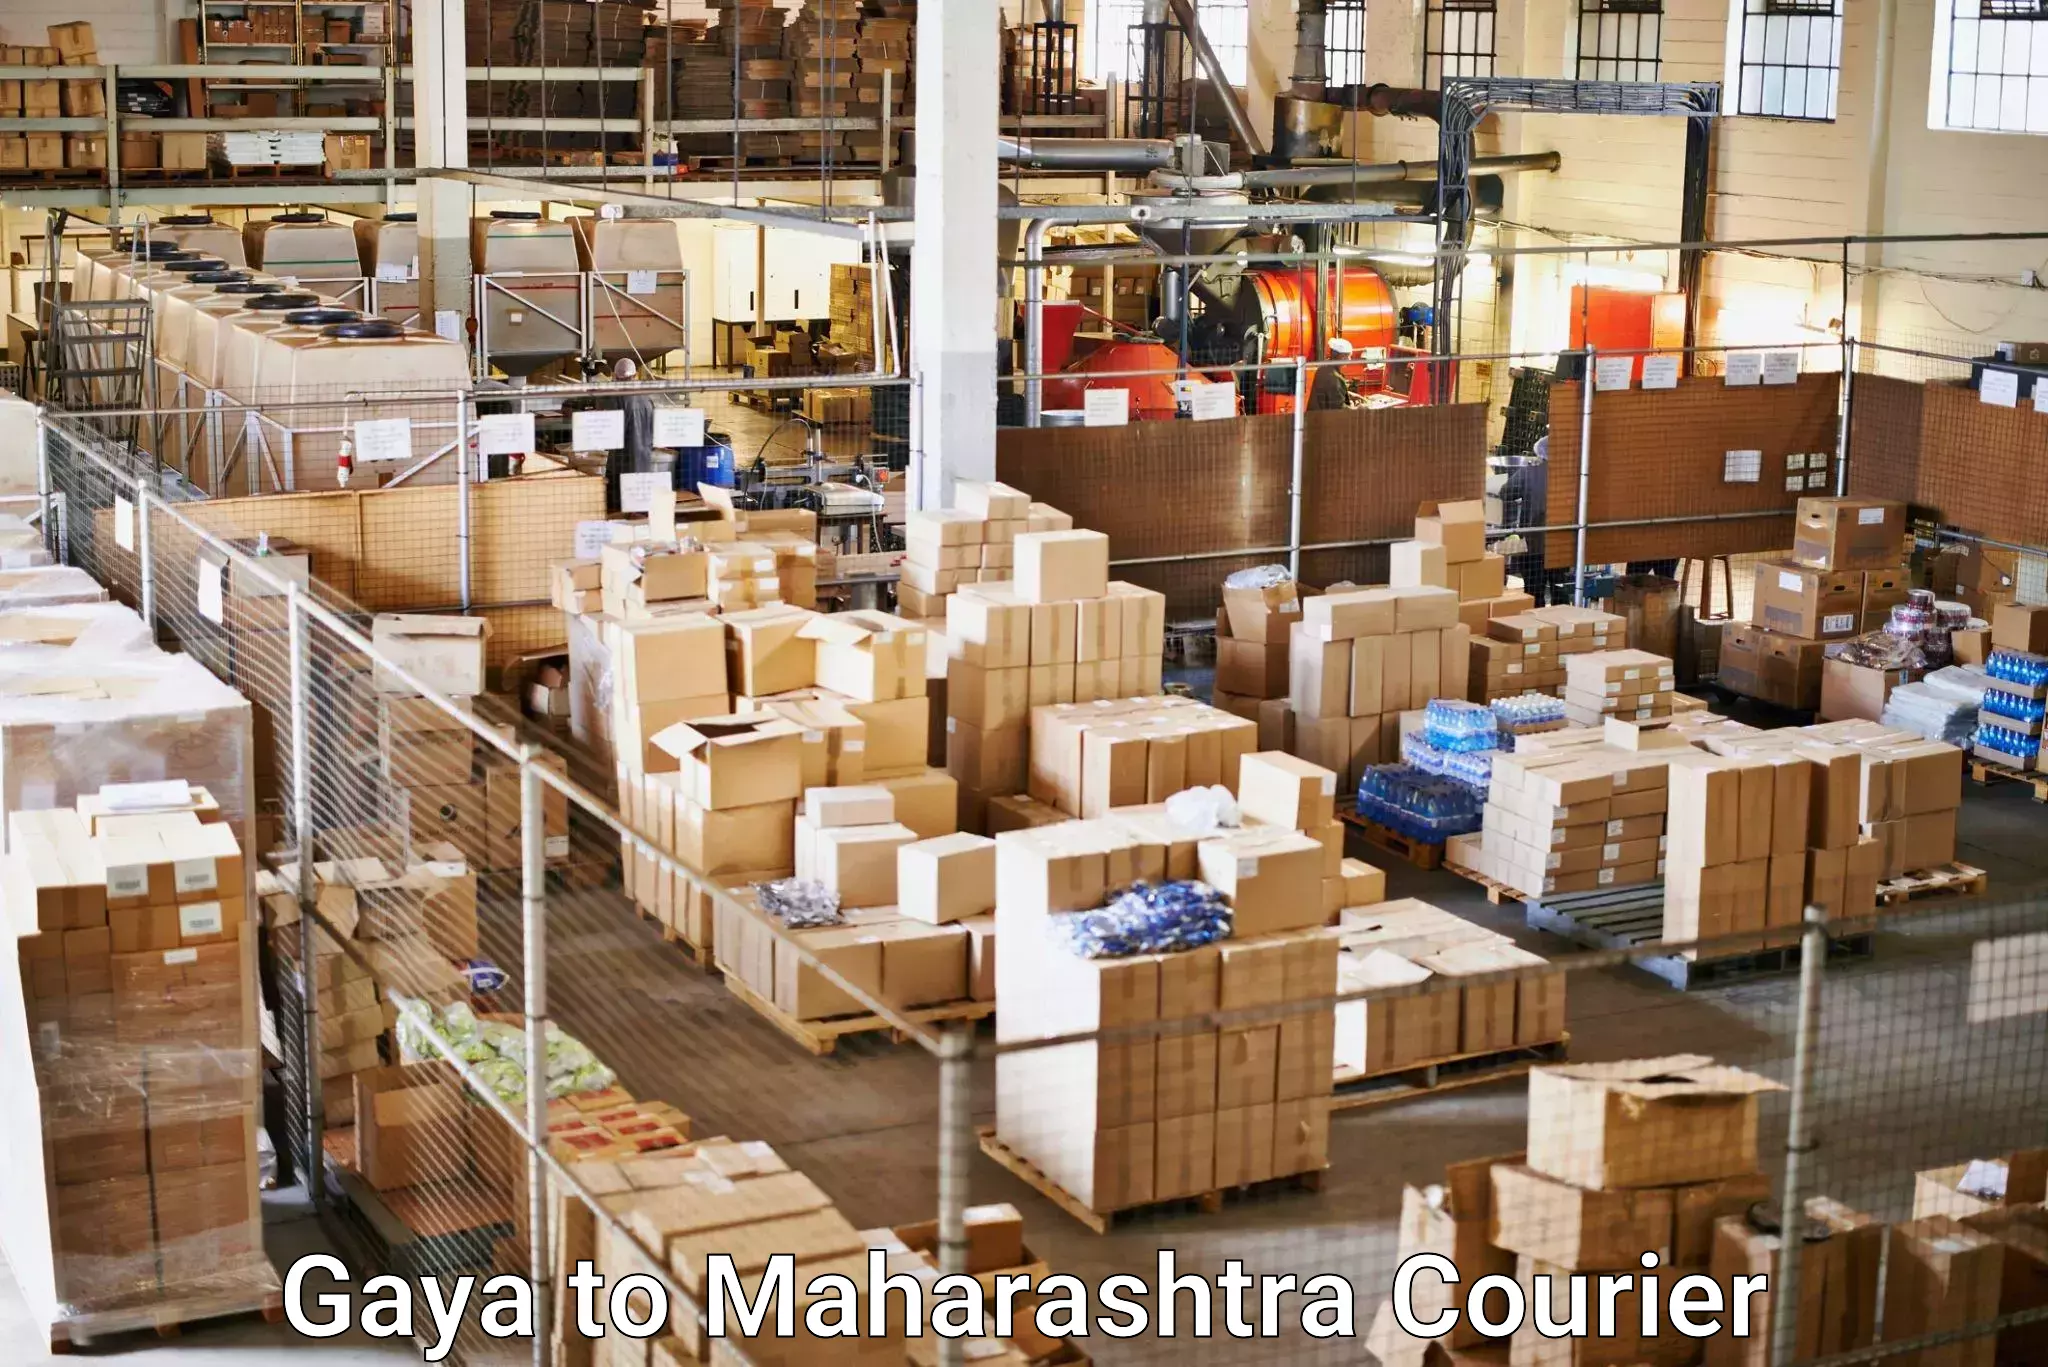 Business shipping needs Gaya to Vairag